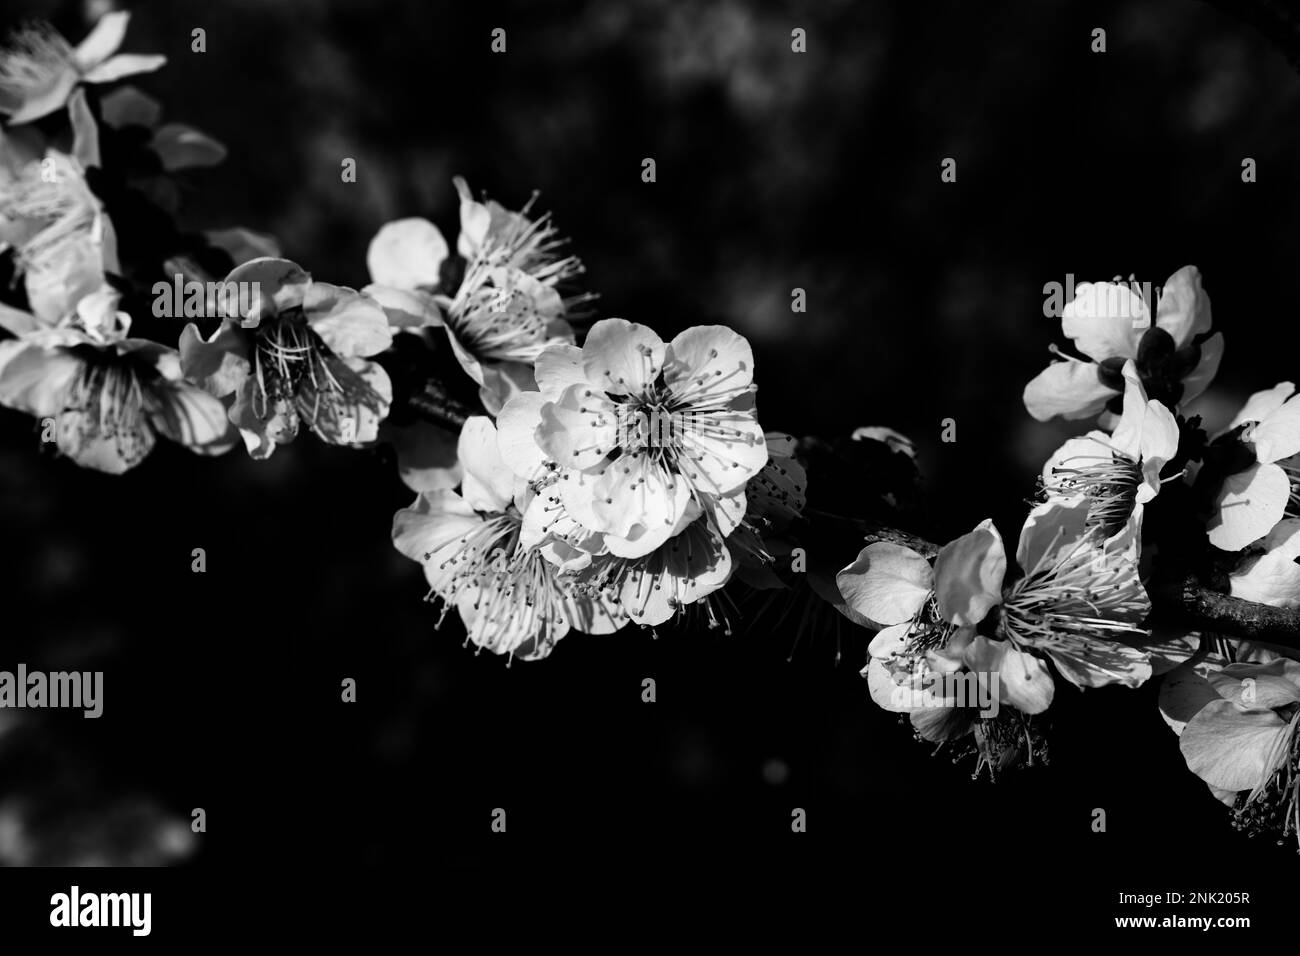 Un cliché monochrome de fleurs de cerisier sur une branche d'arbre, avec un arrière-plan flou Banque D'Images